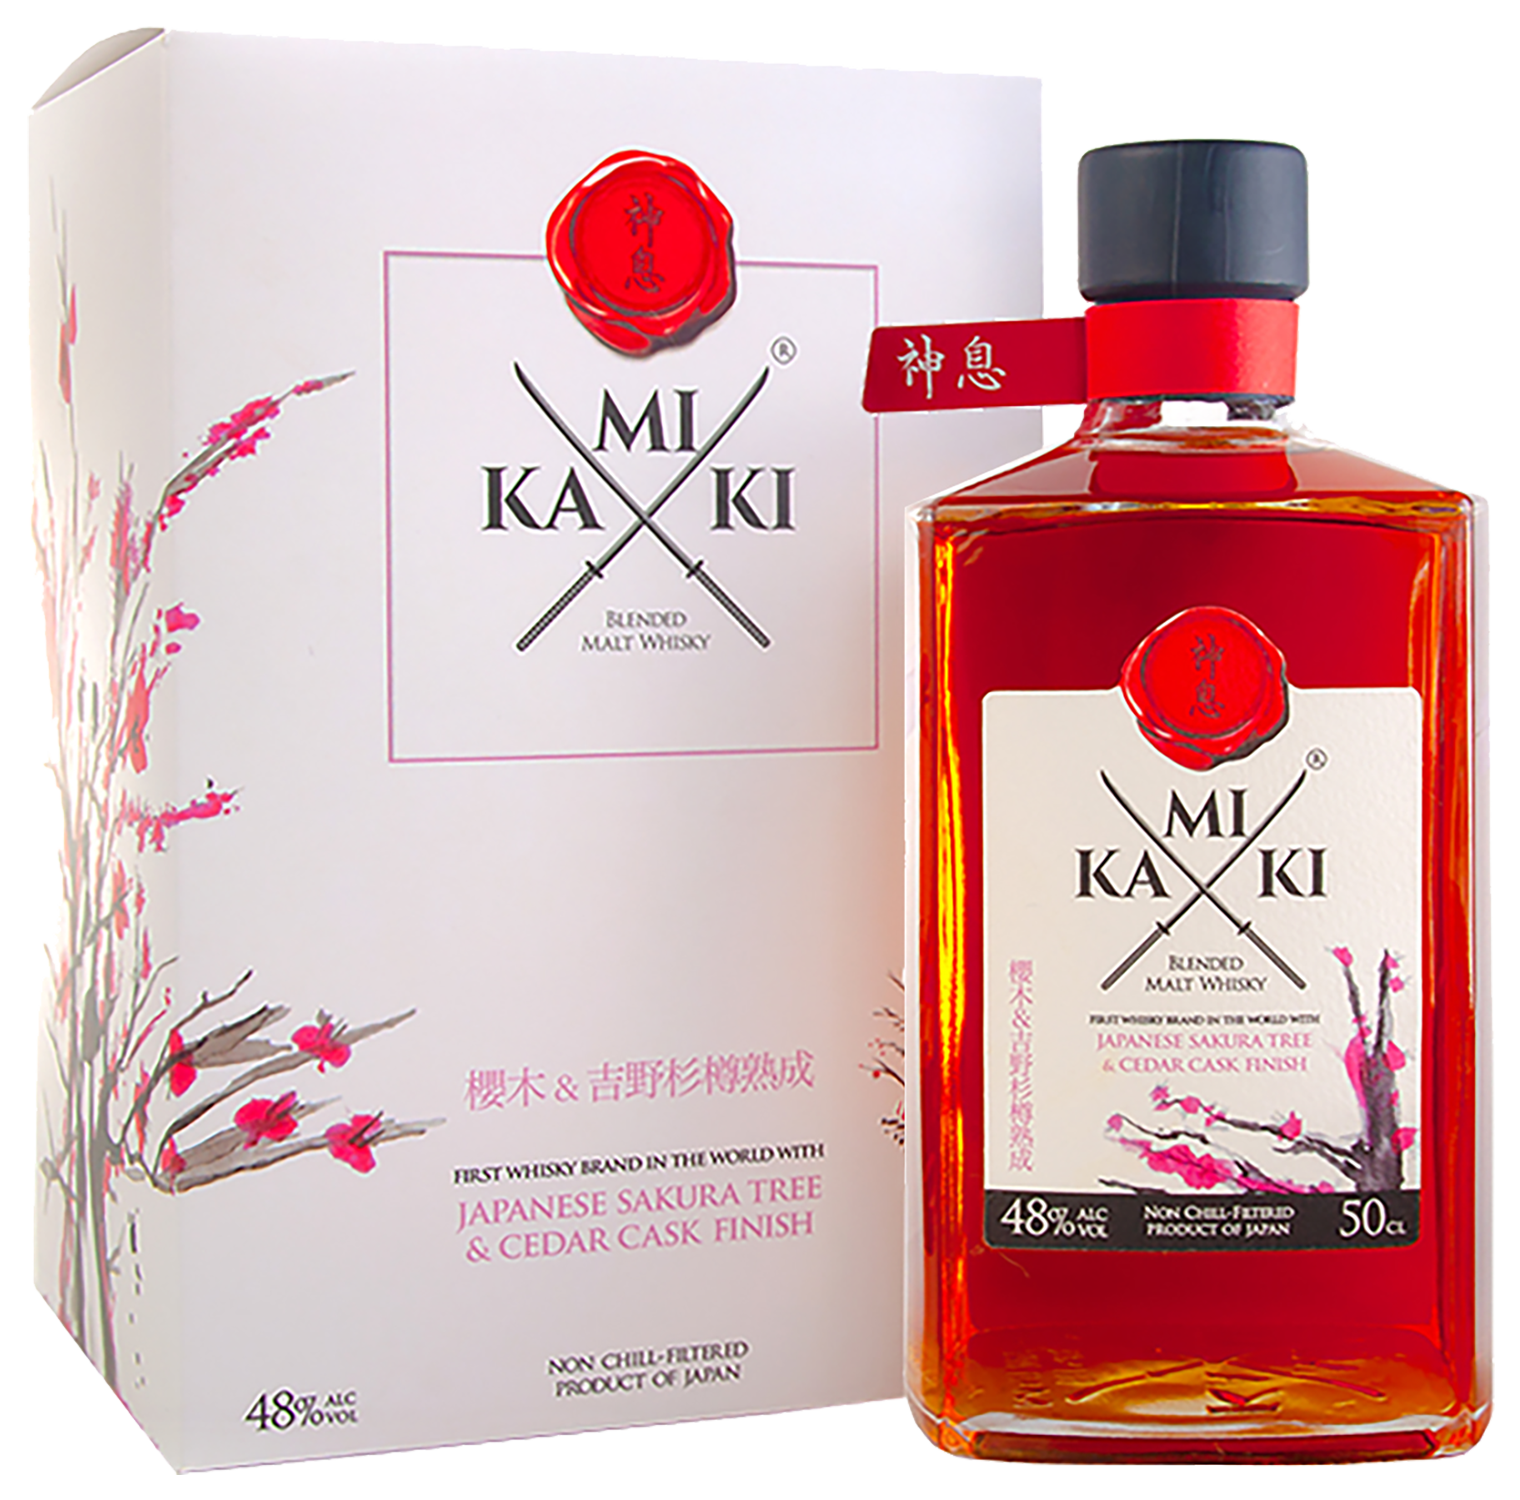 Kamiki Sakura Wood Blended Malt Whisky (gift box)